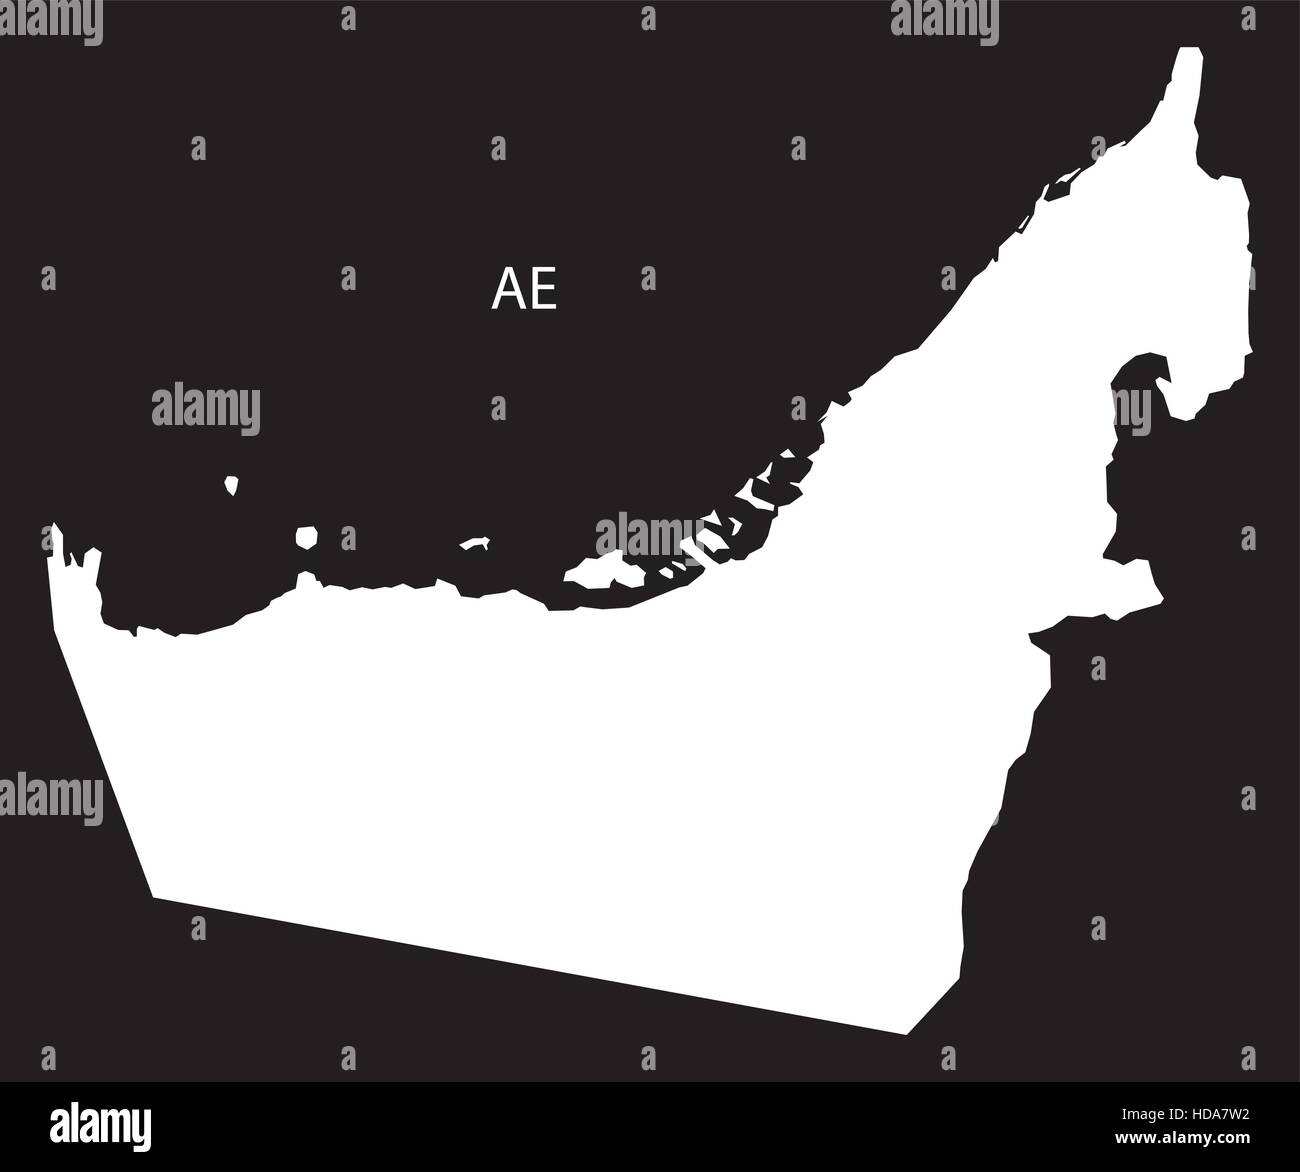 Vereinigte Arabische Emirate Karte schwarz-weiß-Abbildung Stock Vektor